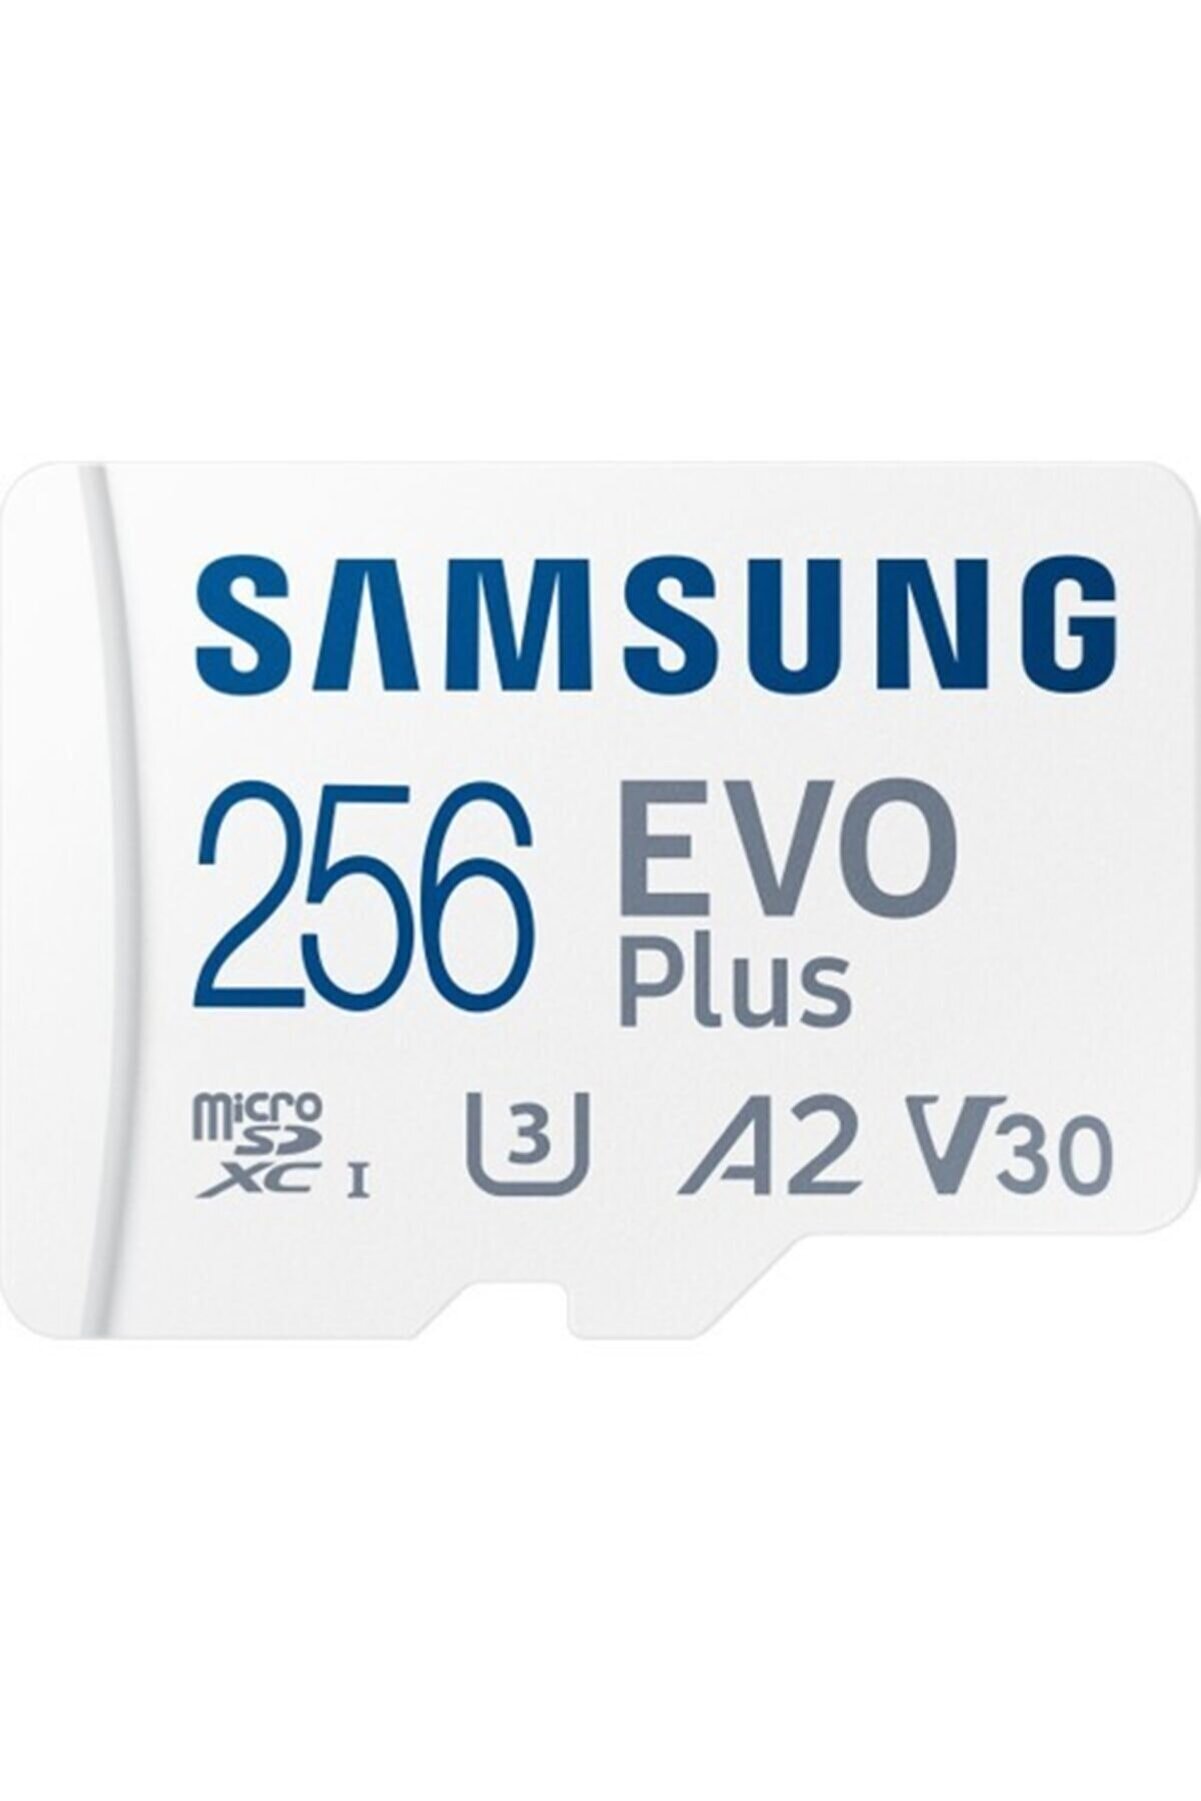 Samsung Evo Plus 256gb Microsd Hafıza Kartı Mb-mc256ka/tr - 130 Mb/sn